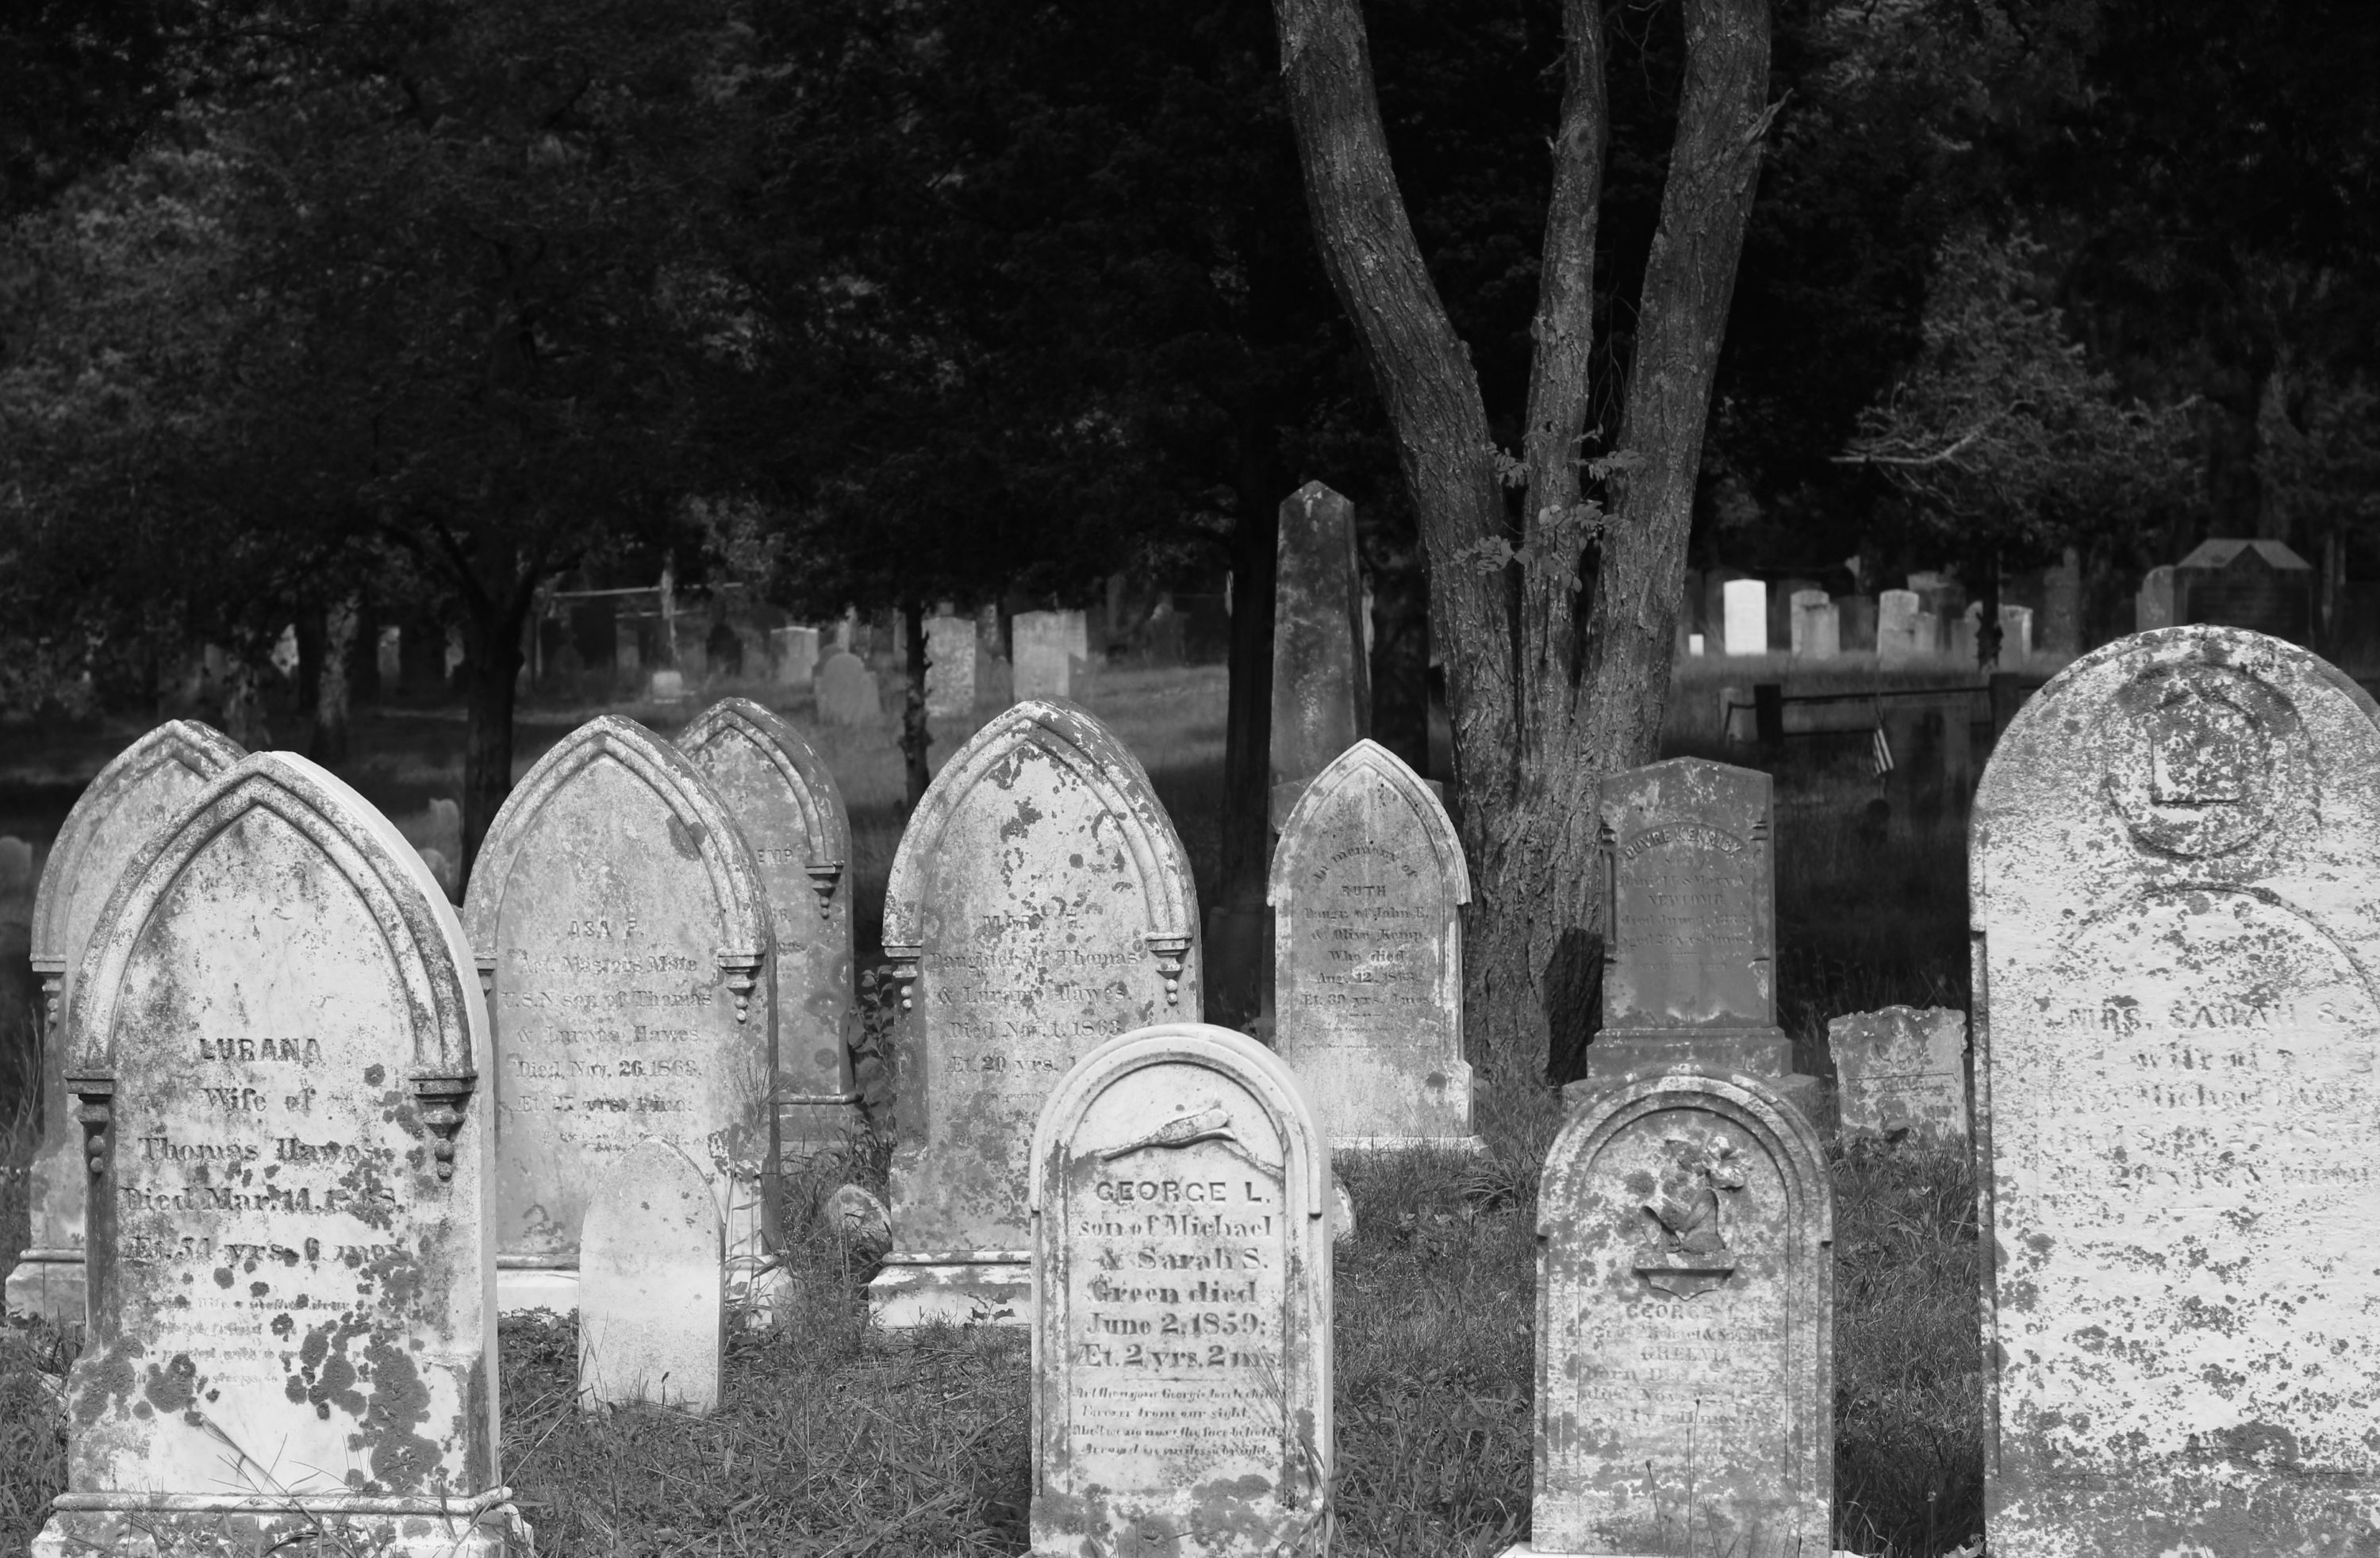 Cemetery, Cape Cod MA